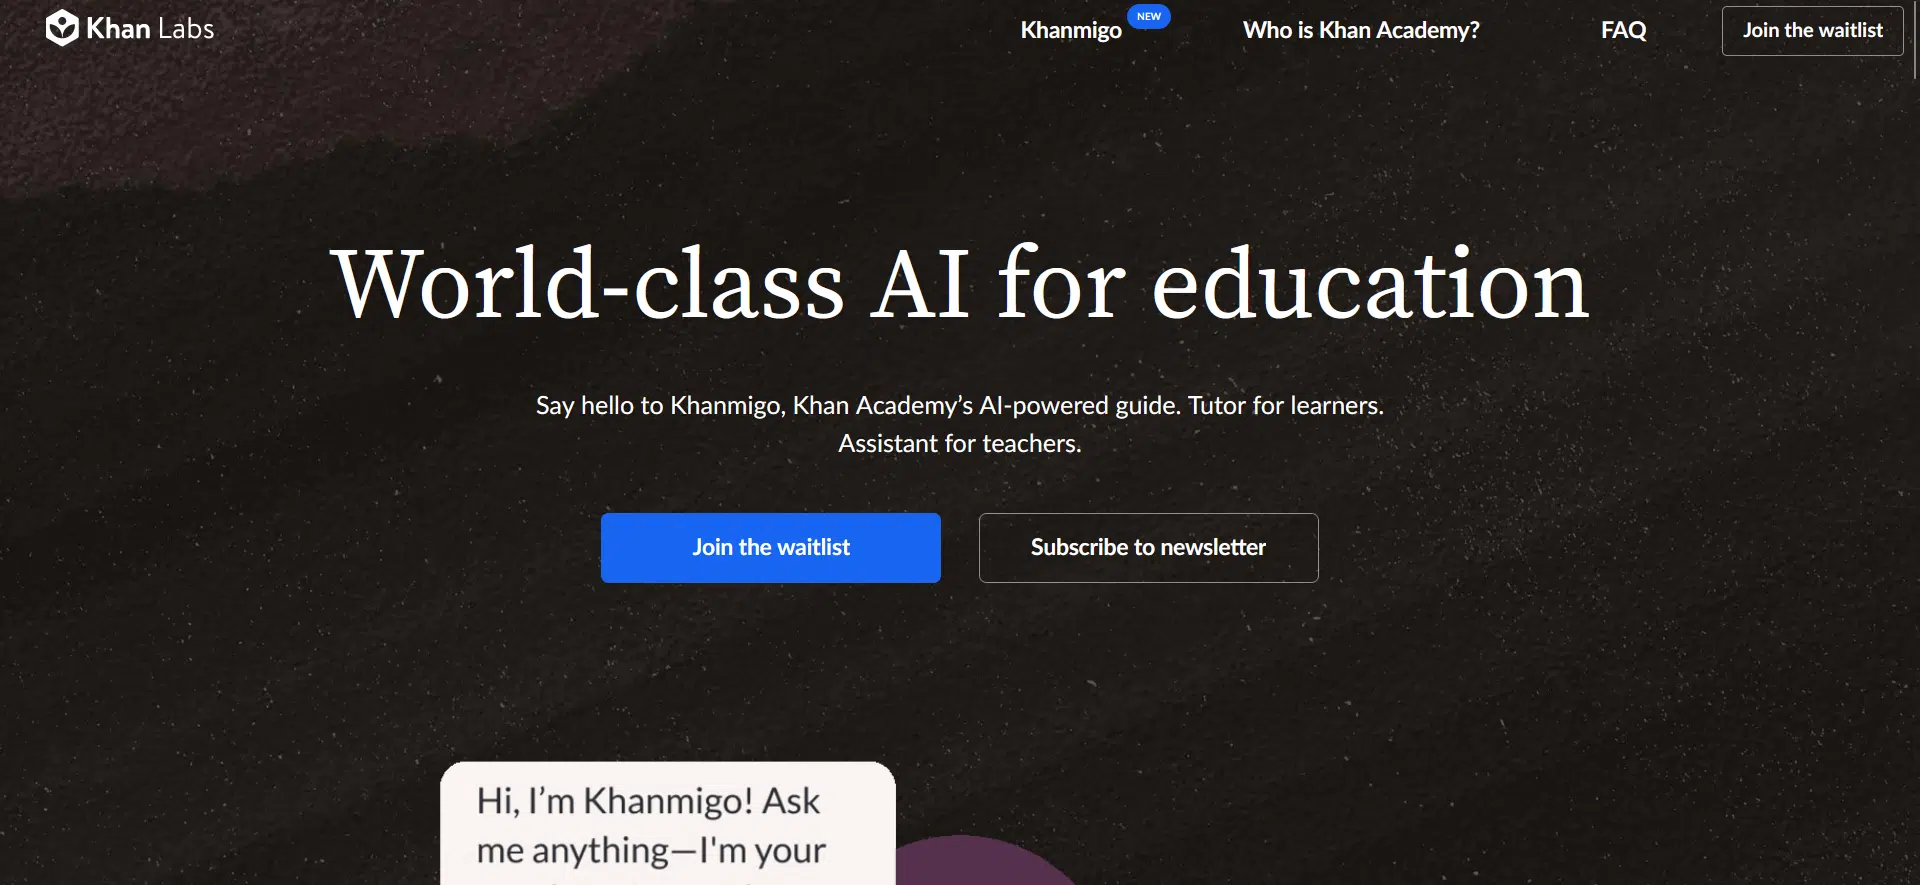 Khan Academy Khanmigowebsite picture